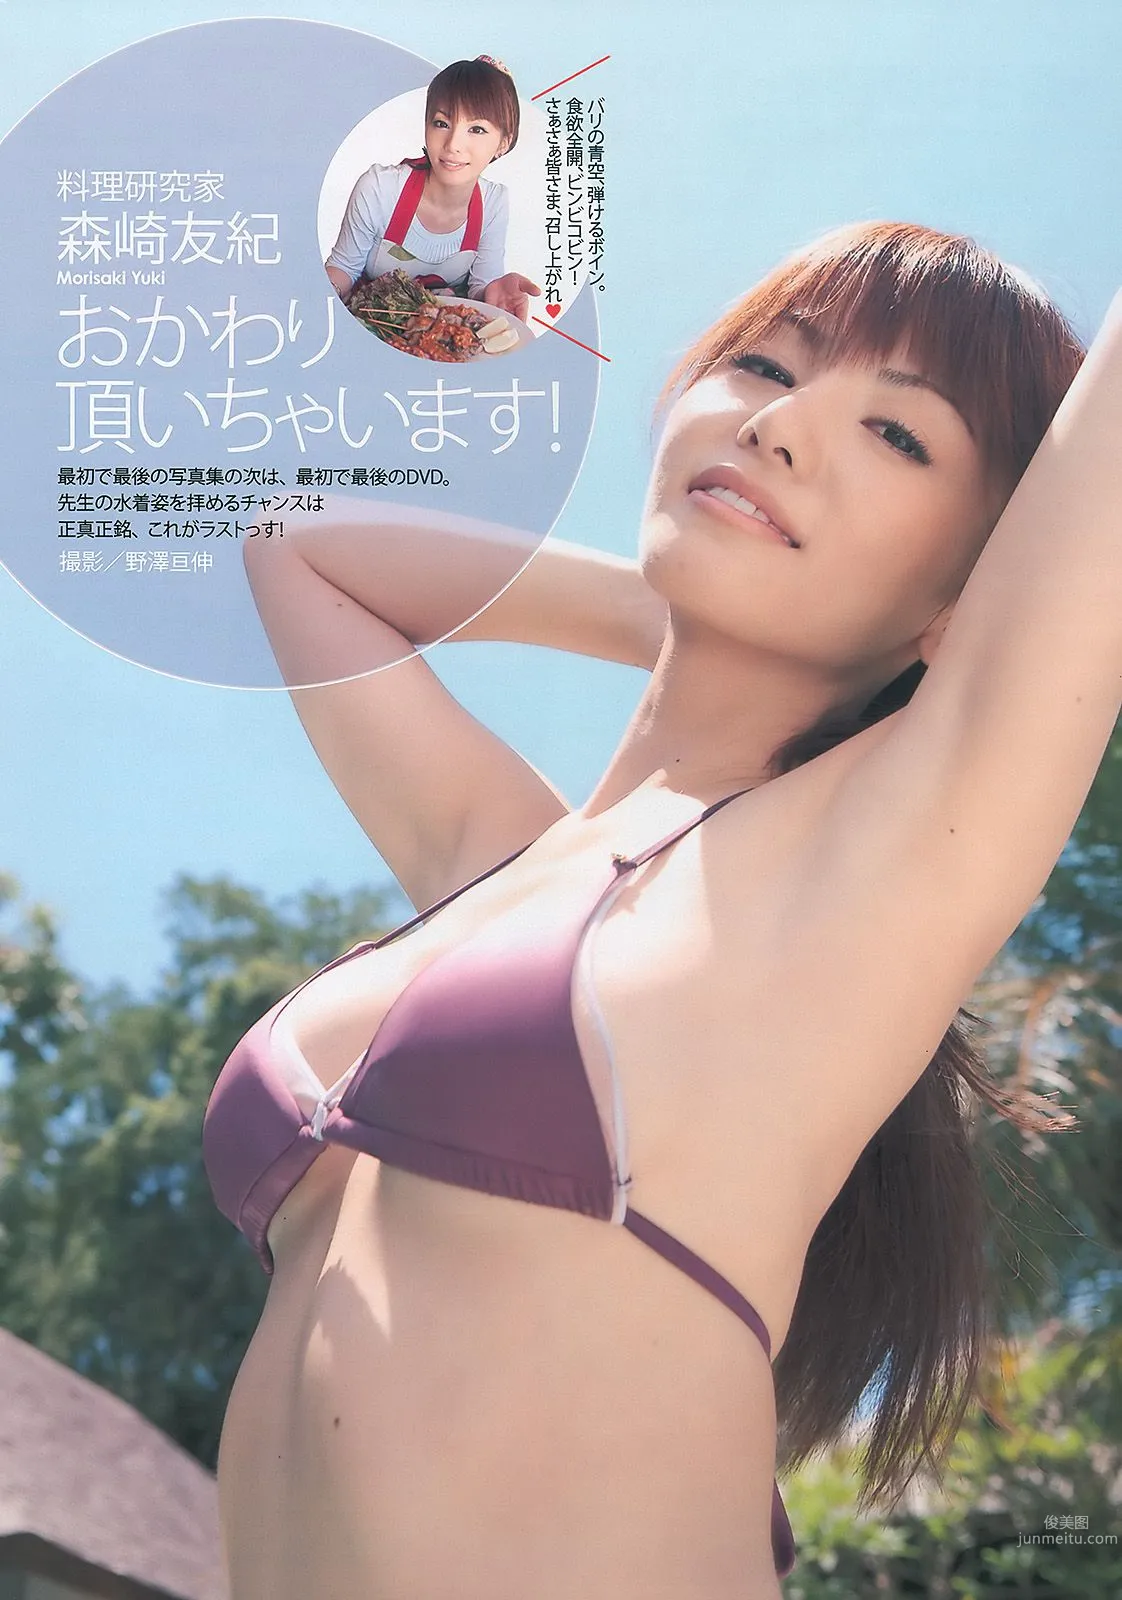 平野綾 AKB48 佐藤寛子 西田麻衣 森崎友紀 Agnes Lum [Weekly Playboy] 2010年No.51 写真杂志28